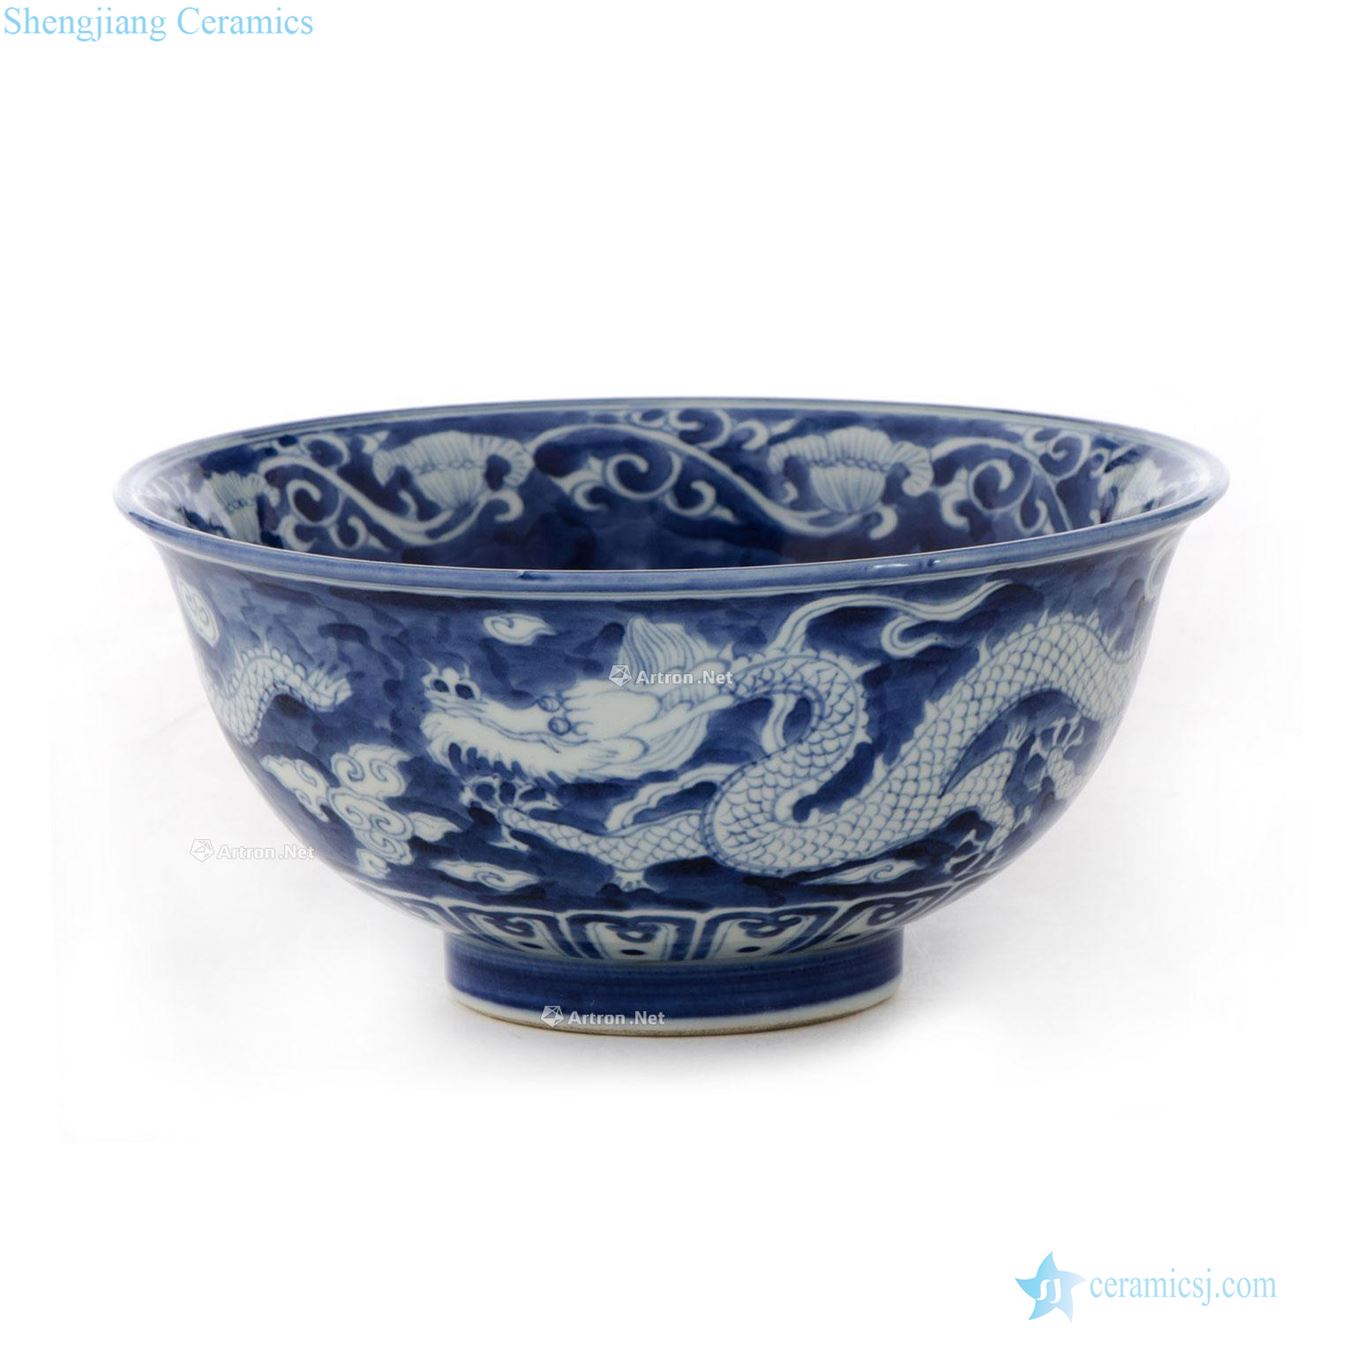 jiajing The blue glaze white dragon grain bowl